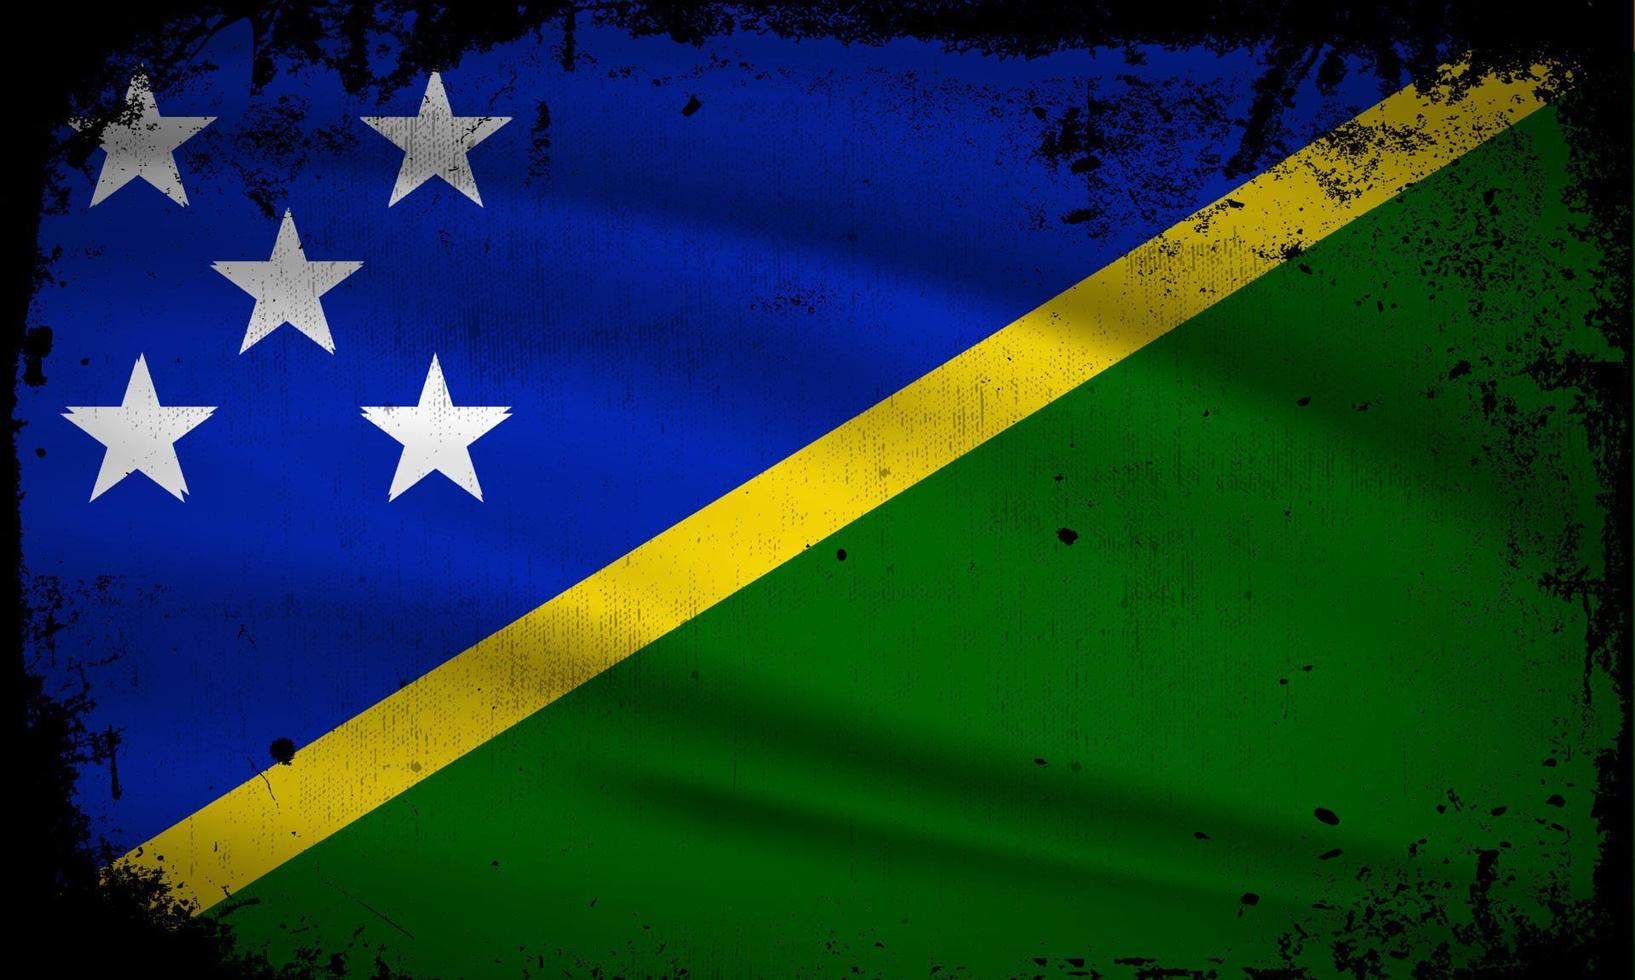 novo vetor abstrato de fundo de bandeira de ilhas Salomão com estilo de traçado grunge. ilustração em vetor dia da independência das ilhas Salomão.